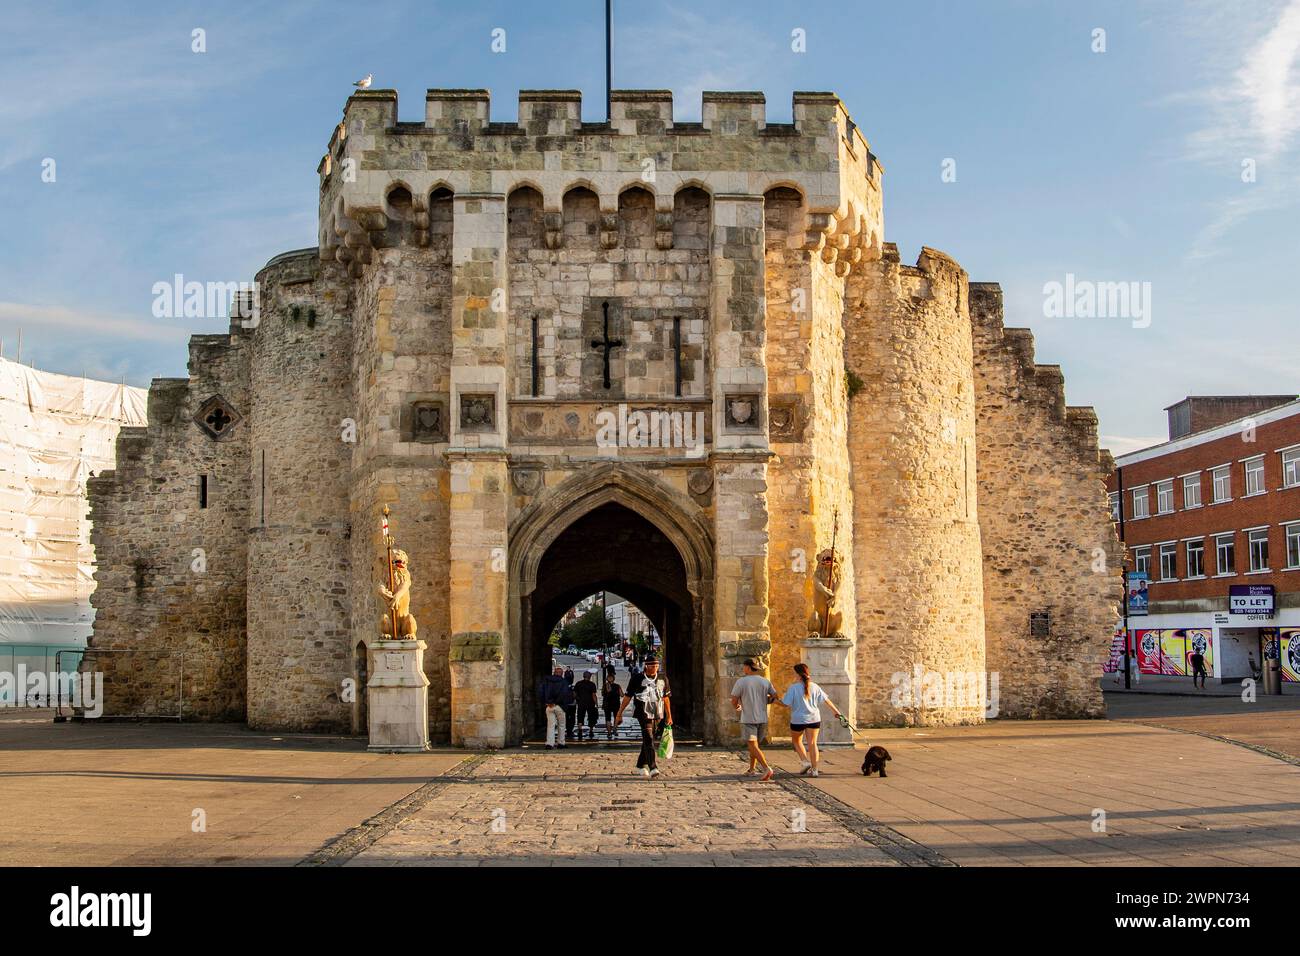 Porte de ville médiévale Bargate dans le centre, Southampton, Hampshire, Grande-Bretagne, Angleterre Banque D'Images